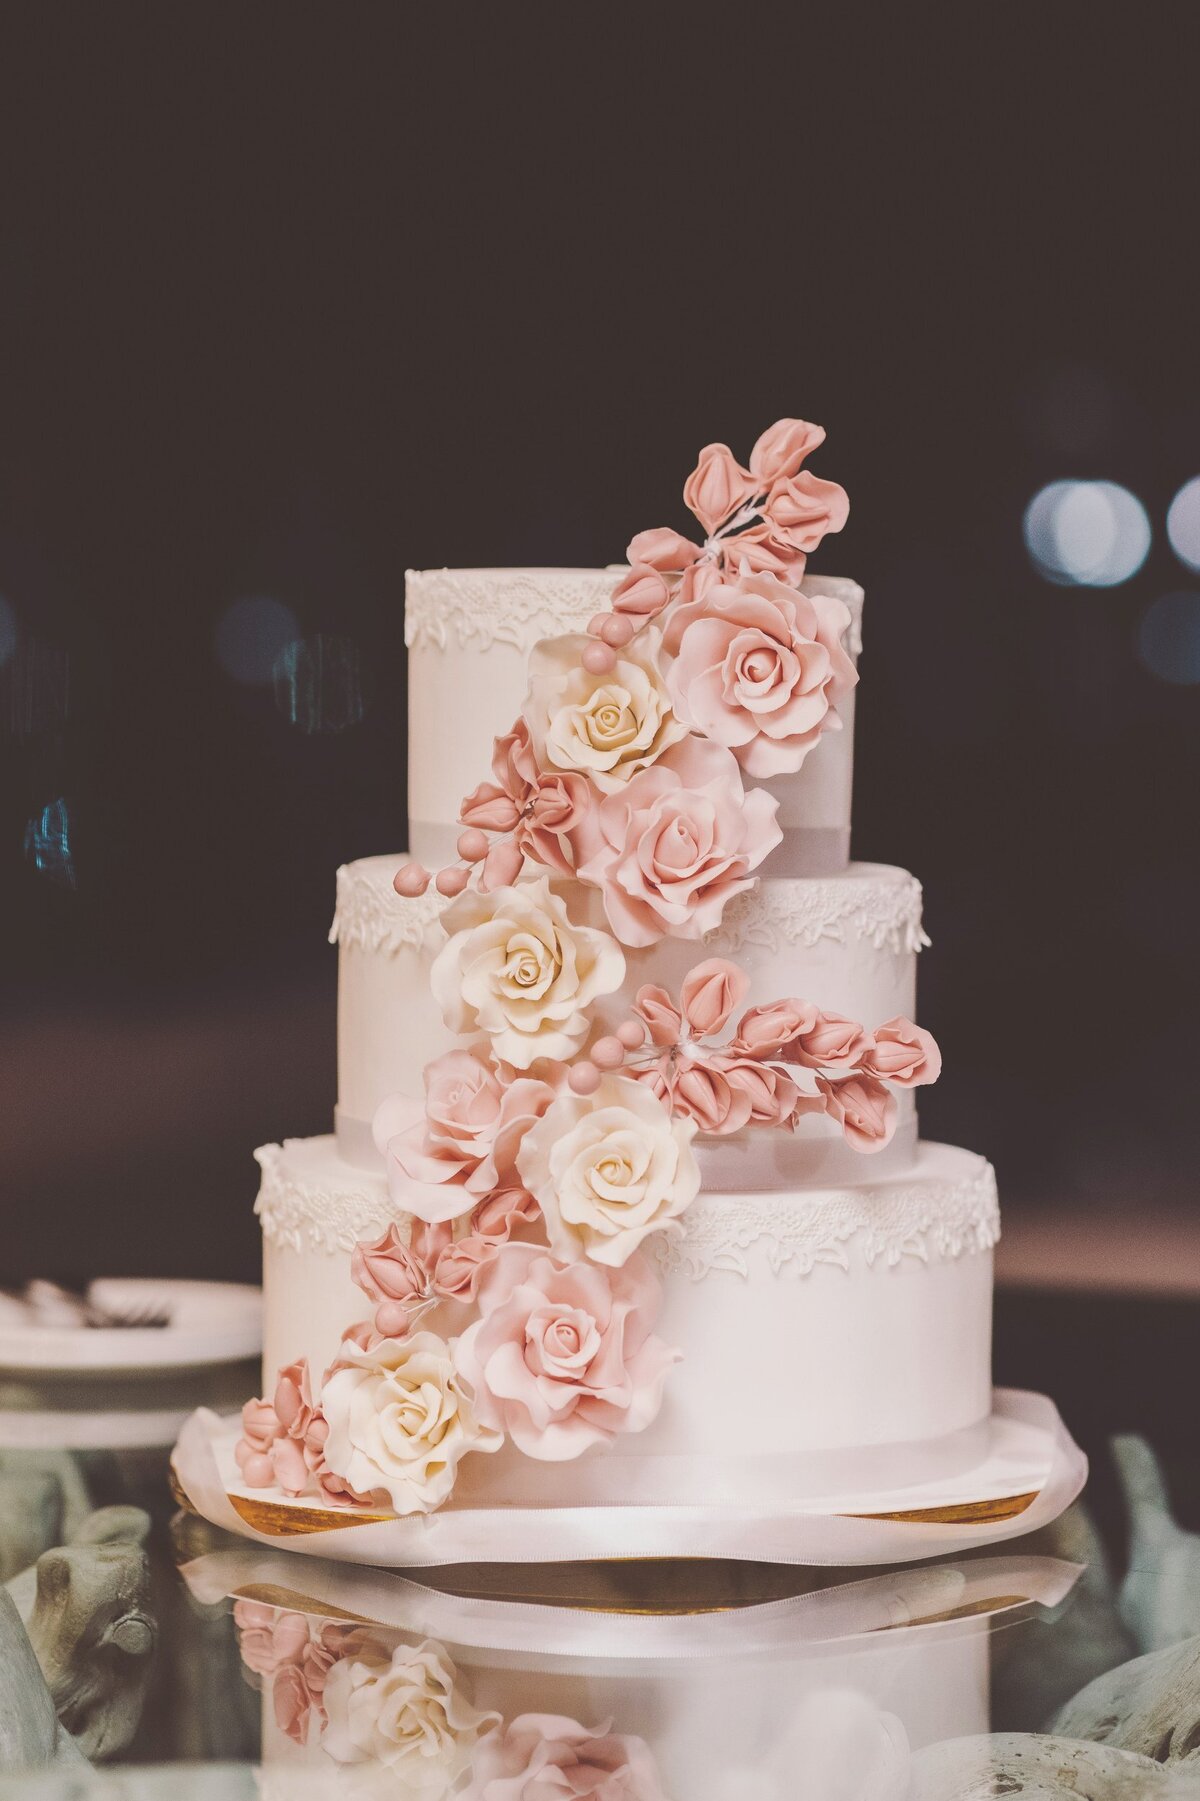 Wedding cake at wedding in Cancun